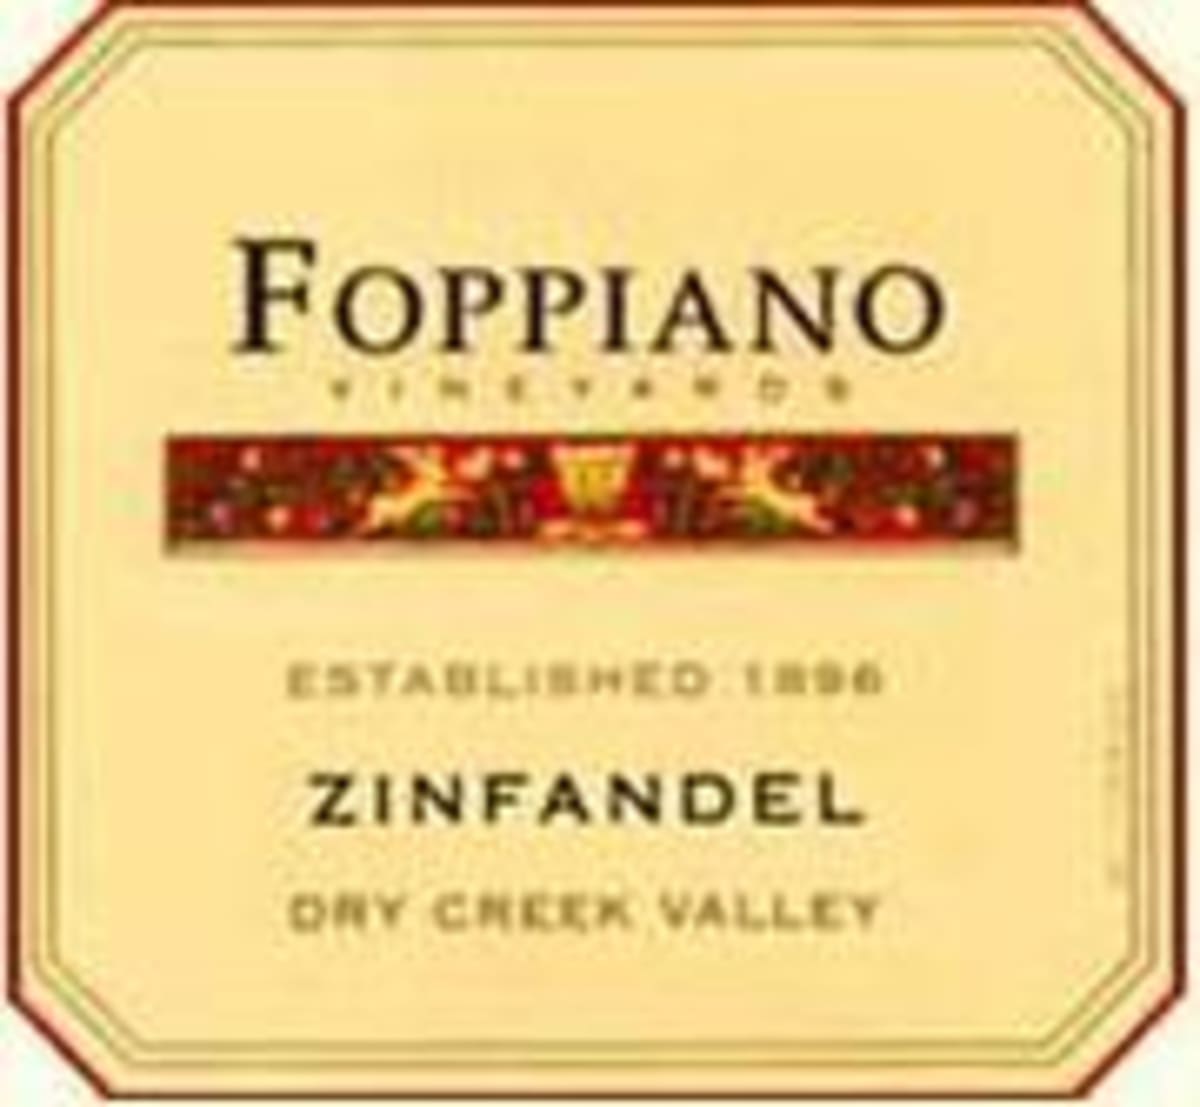 Foppiano Dry Creek Valley Zinfandel 1998 Front Label